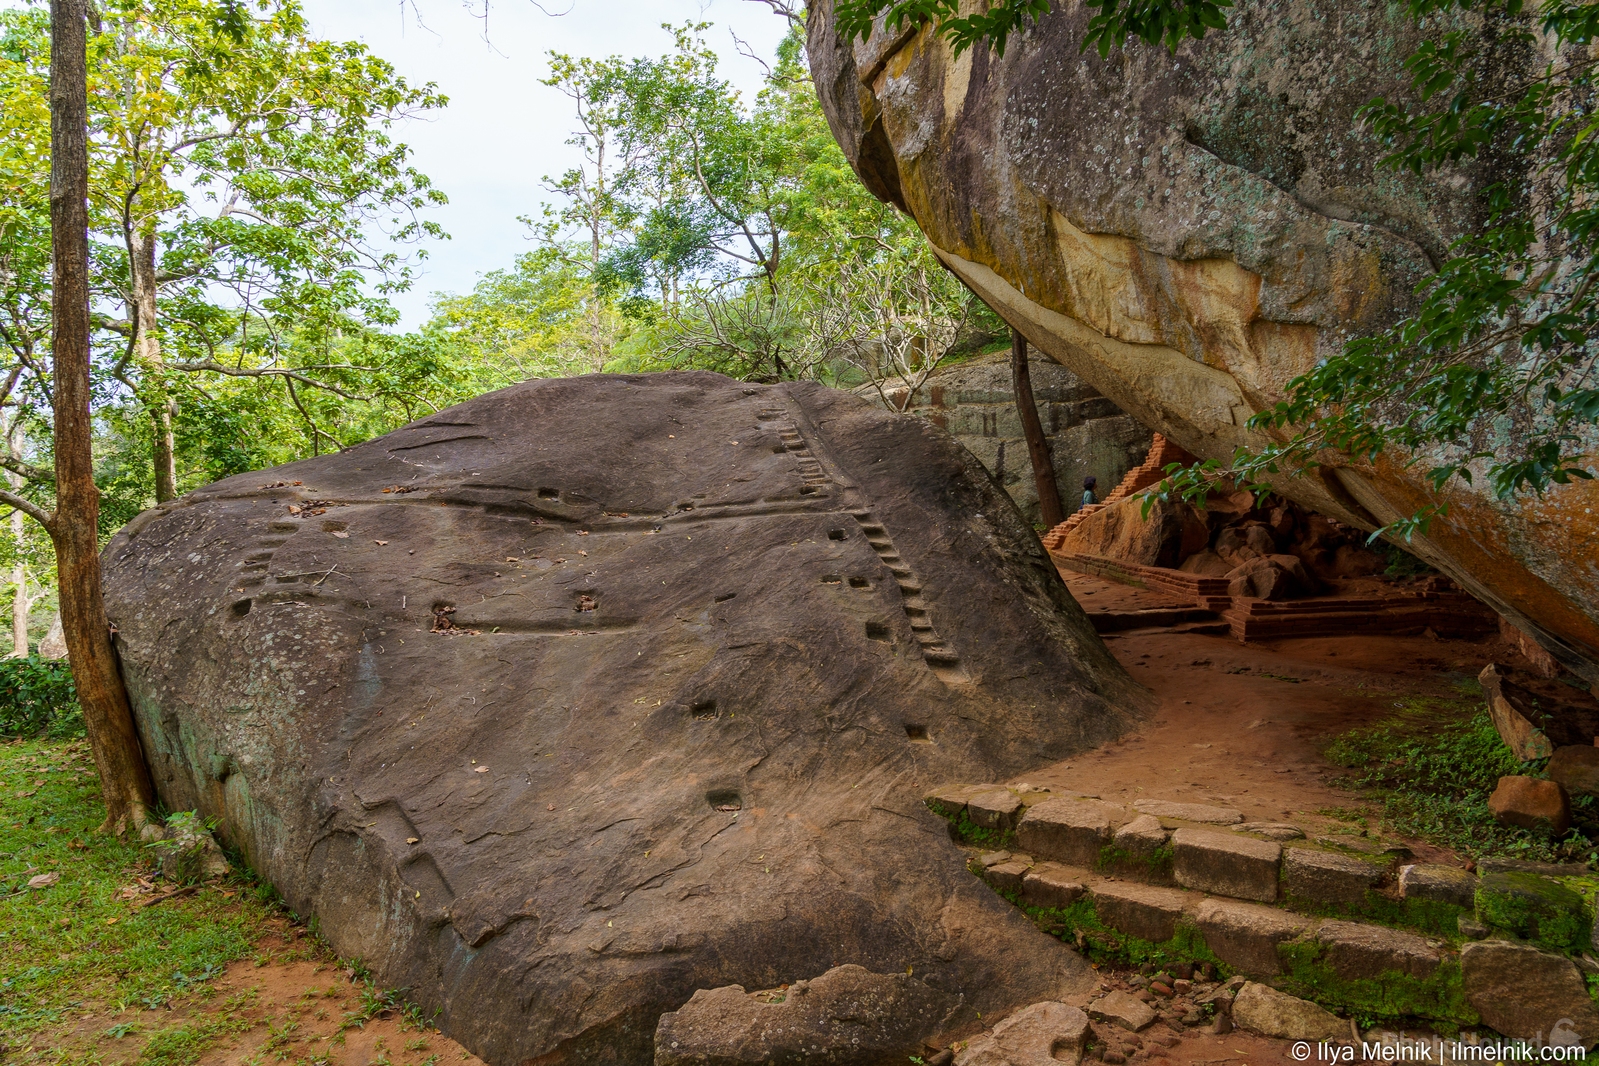 Image of Sigiriya Rock Fortress by Ilya Melnik